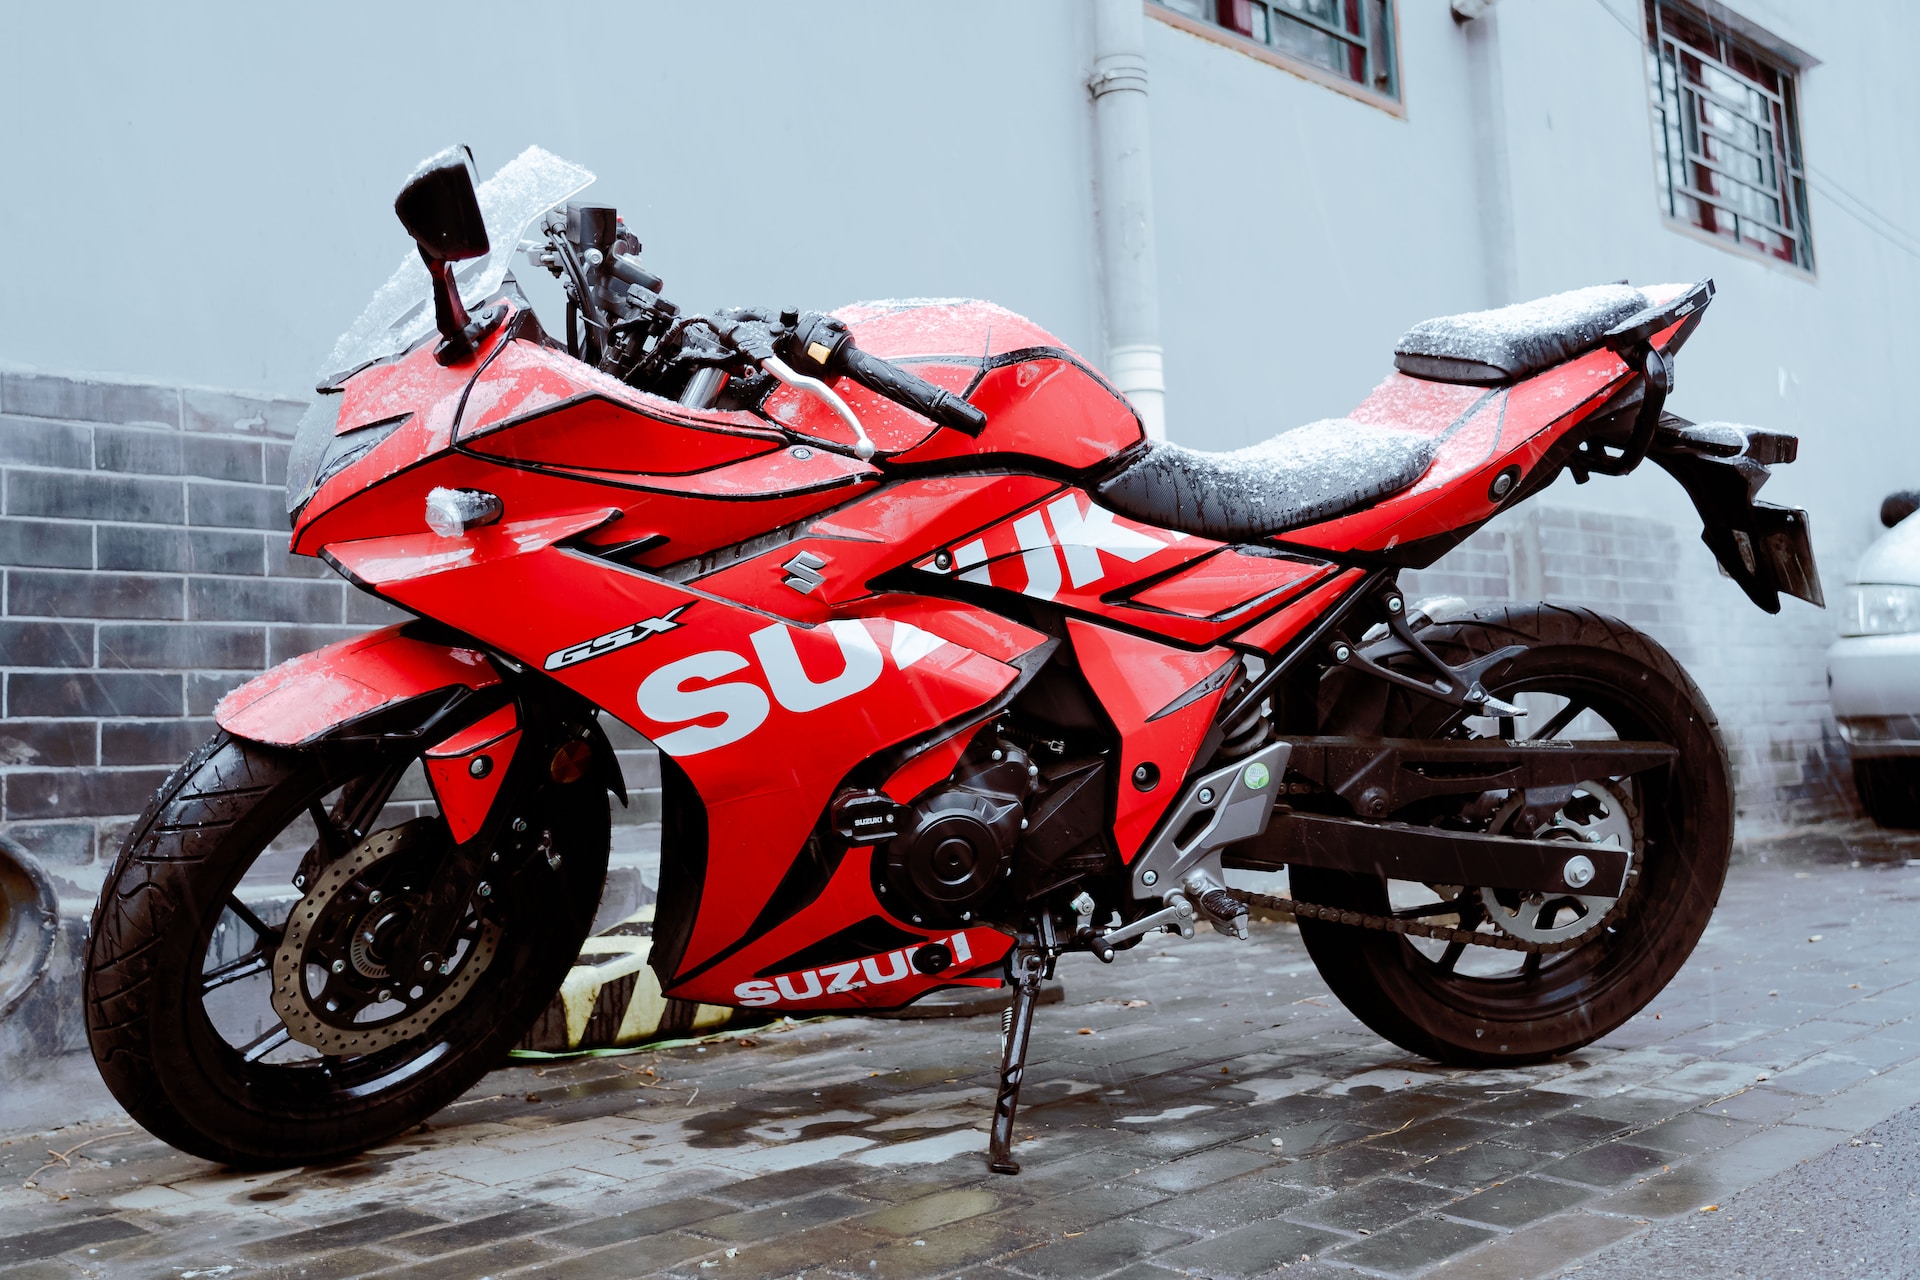 red suzuki parked in a snowy street